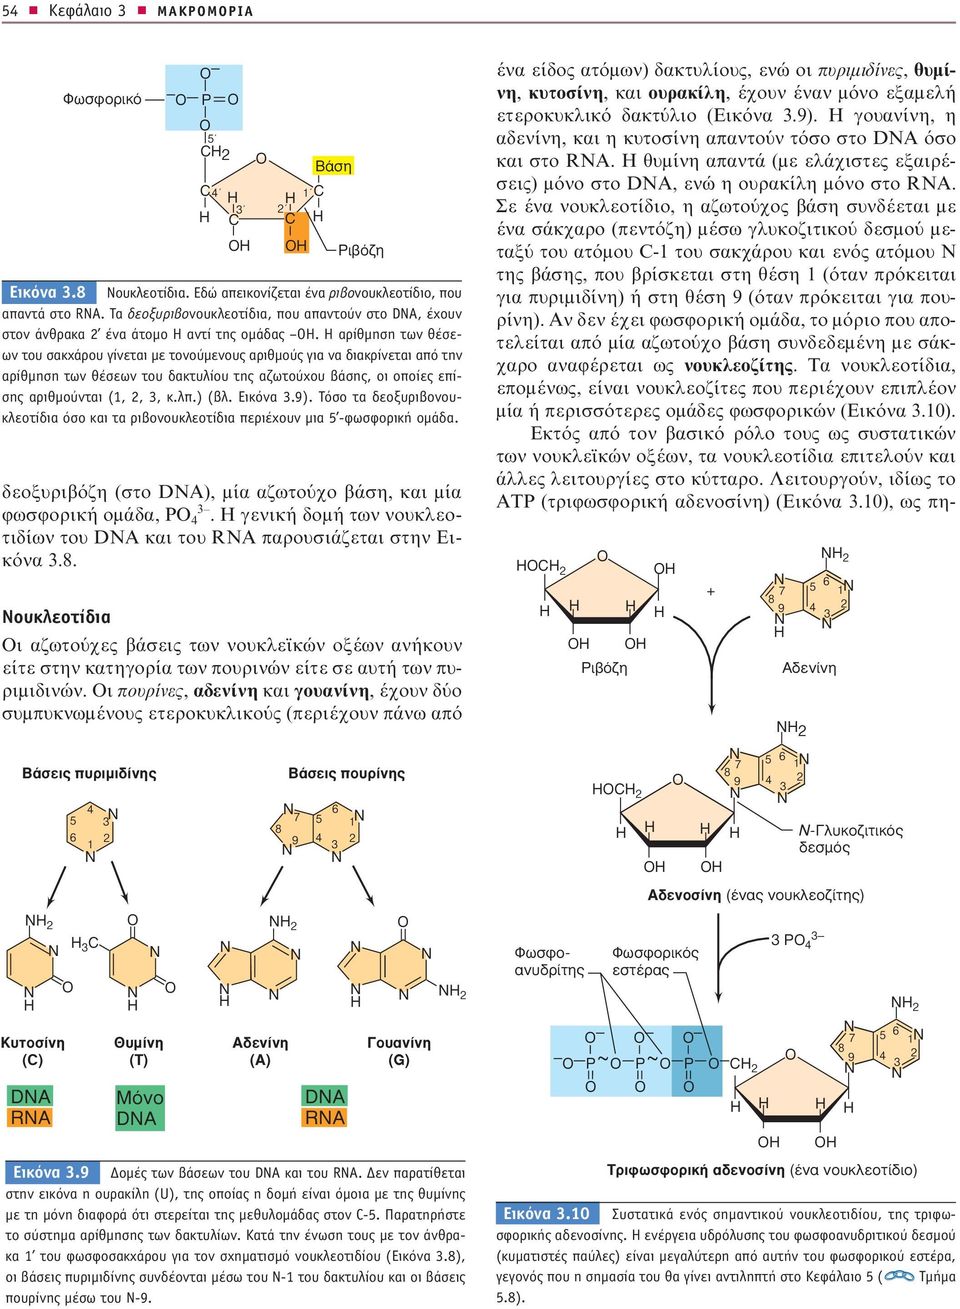 Οι πουρίνες, αδενίνη και γουανίνη, έχουν δύο συμπυκνωμένους ετεροκυκλικούς (περιέχουν πάνω από B ÛË PÈ fi Ë Εικόνα.8 Νουκλεοτίδια. Εδώ απεικονίζεται ένα ριβονουκλεοτίδιο, που απαντά στο RA.